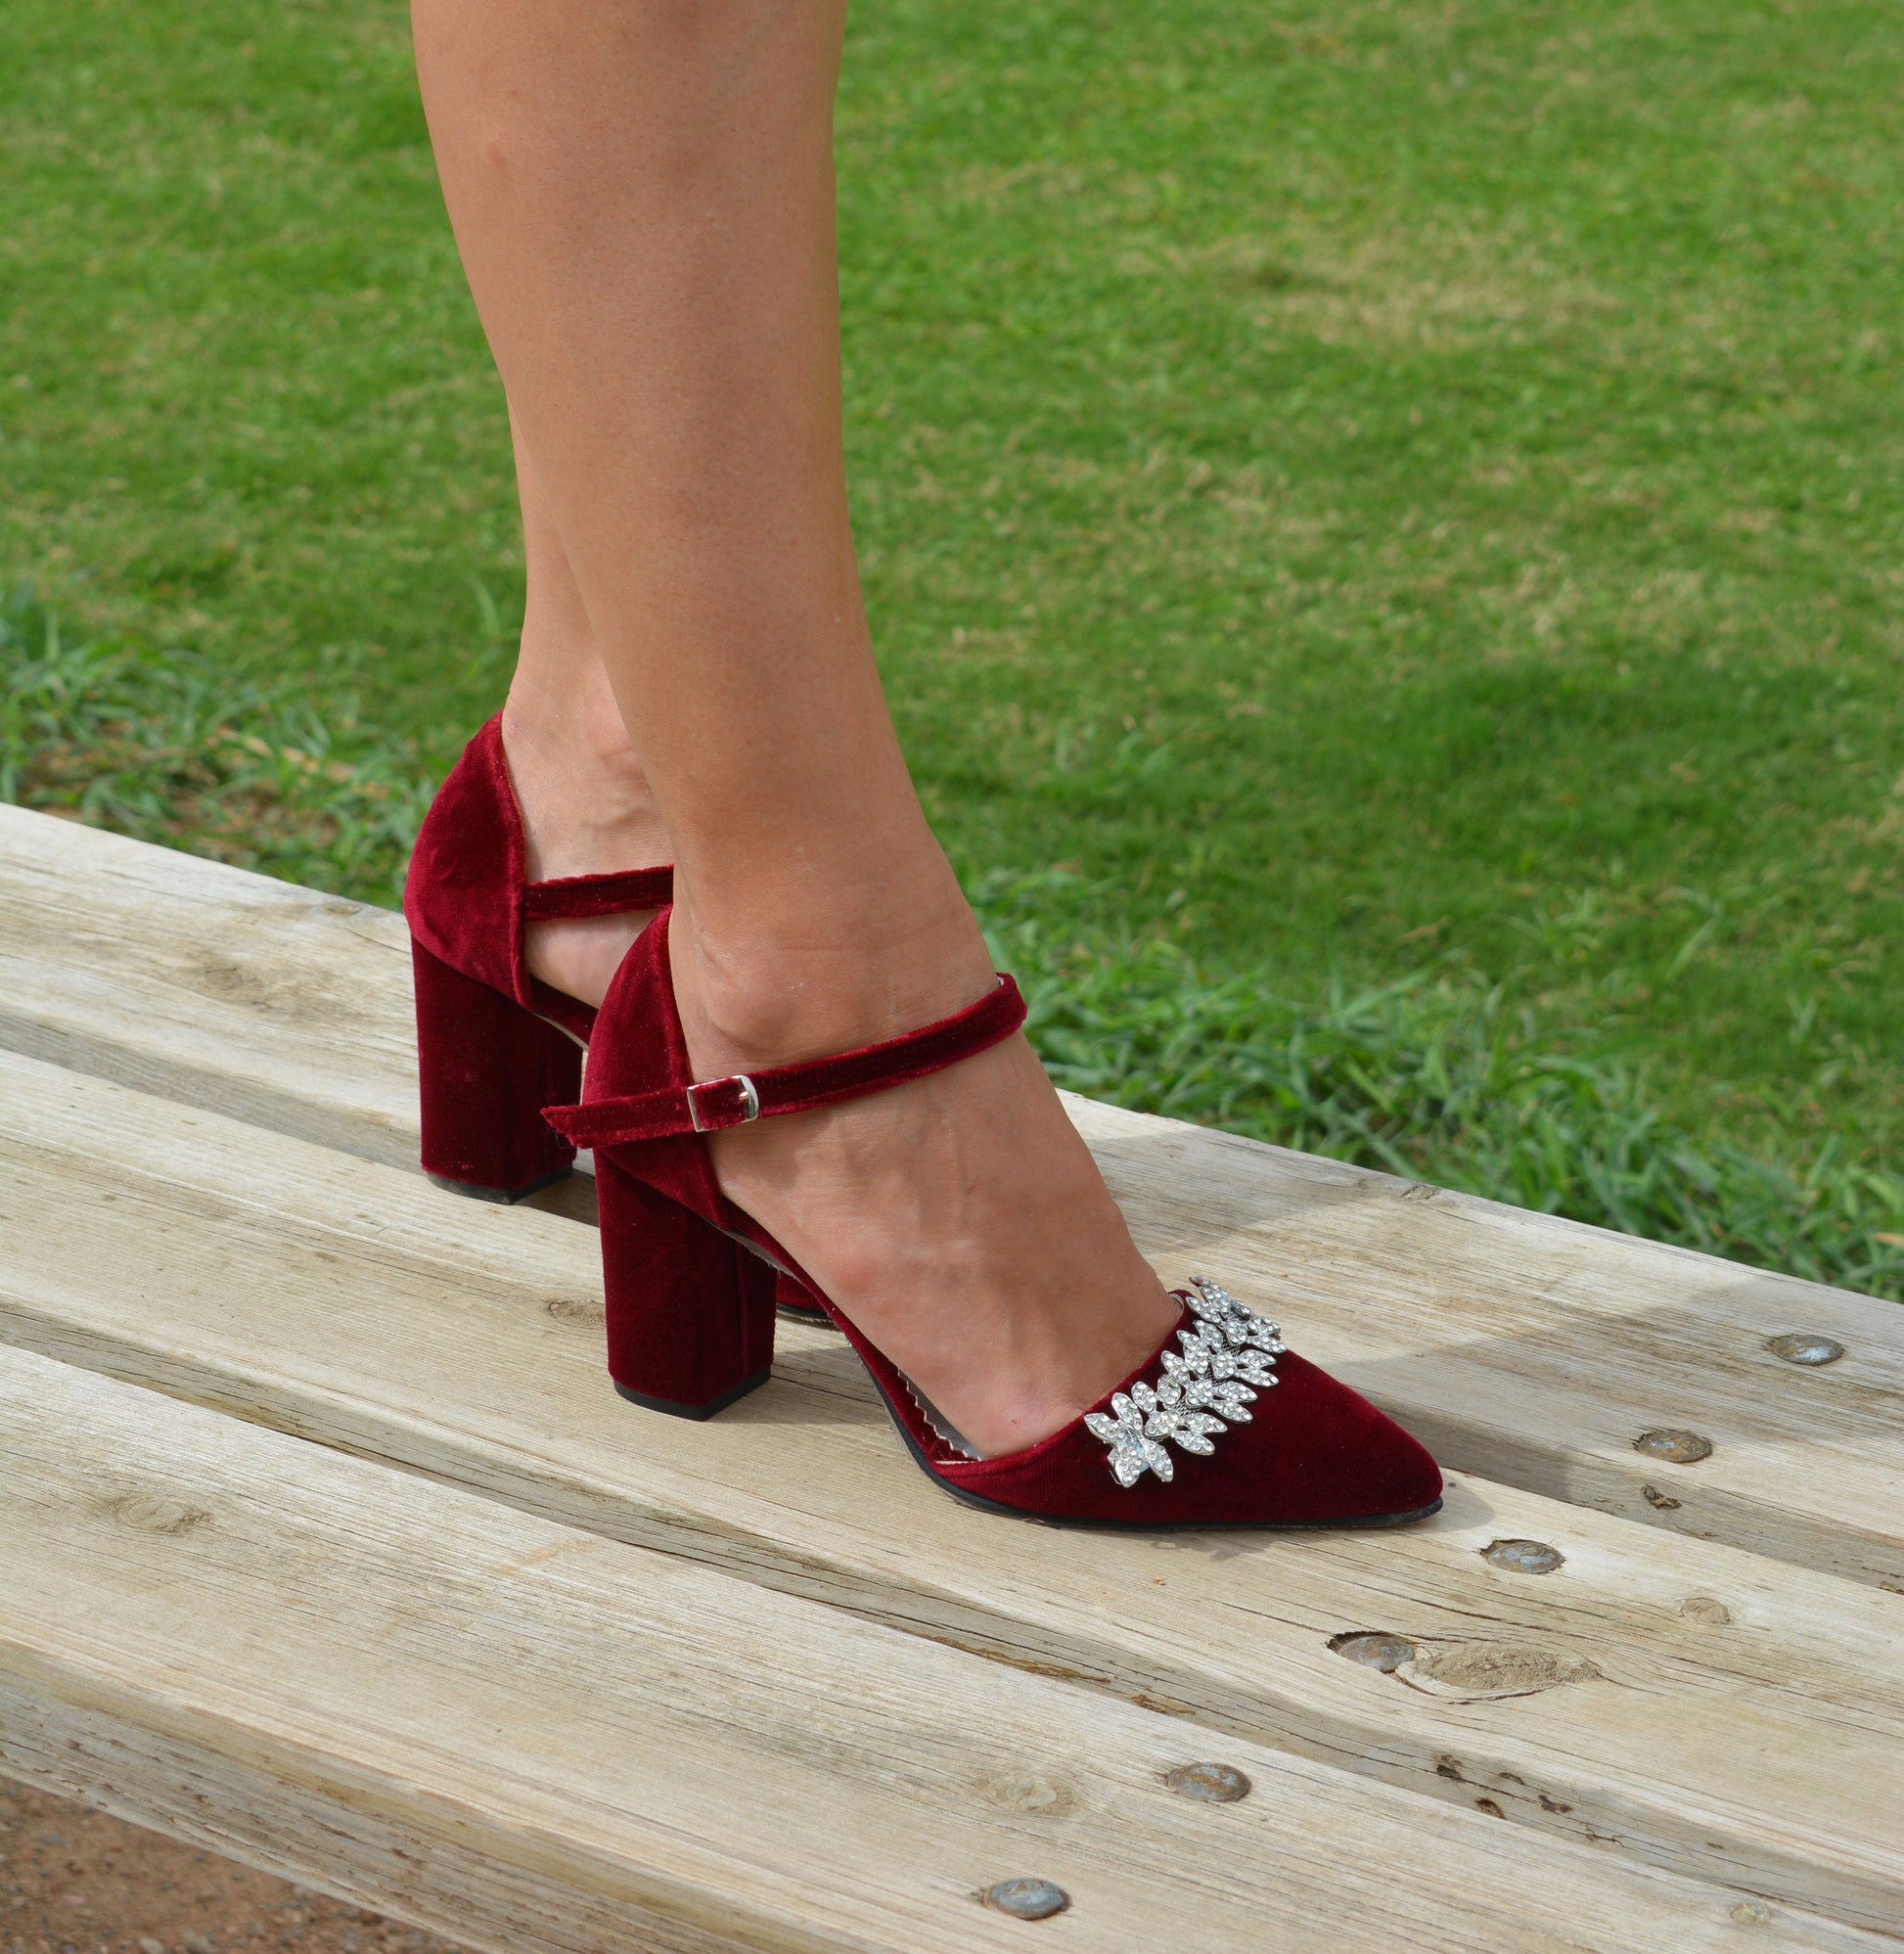 Wedding Shoes For Bride Block Heel | Ivory Satin Block Heels – Phoenix  England